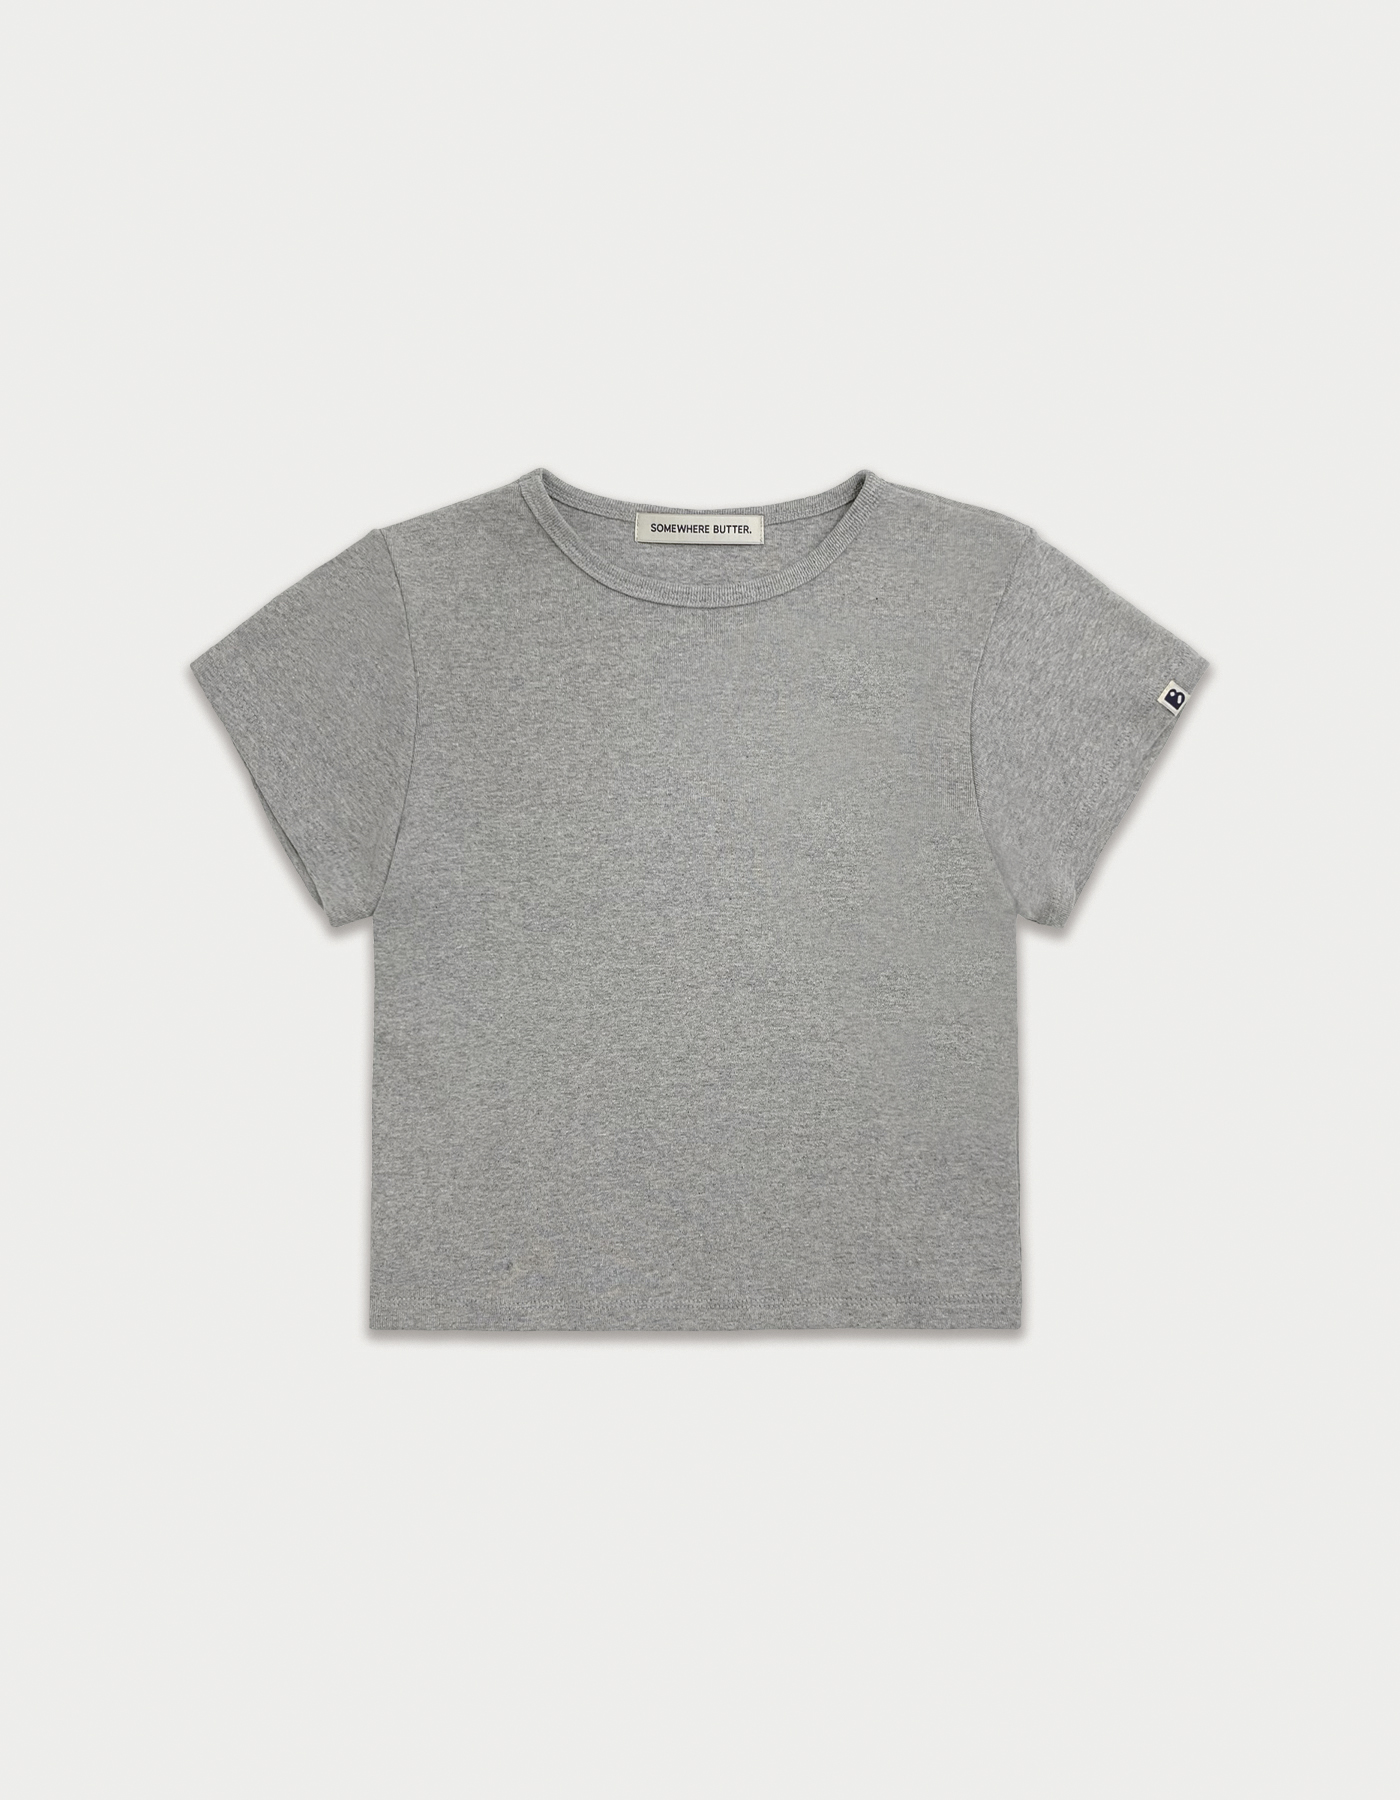 [3rd Order 5.30 출고] Essential clean top - grey